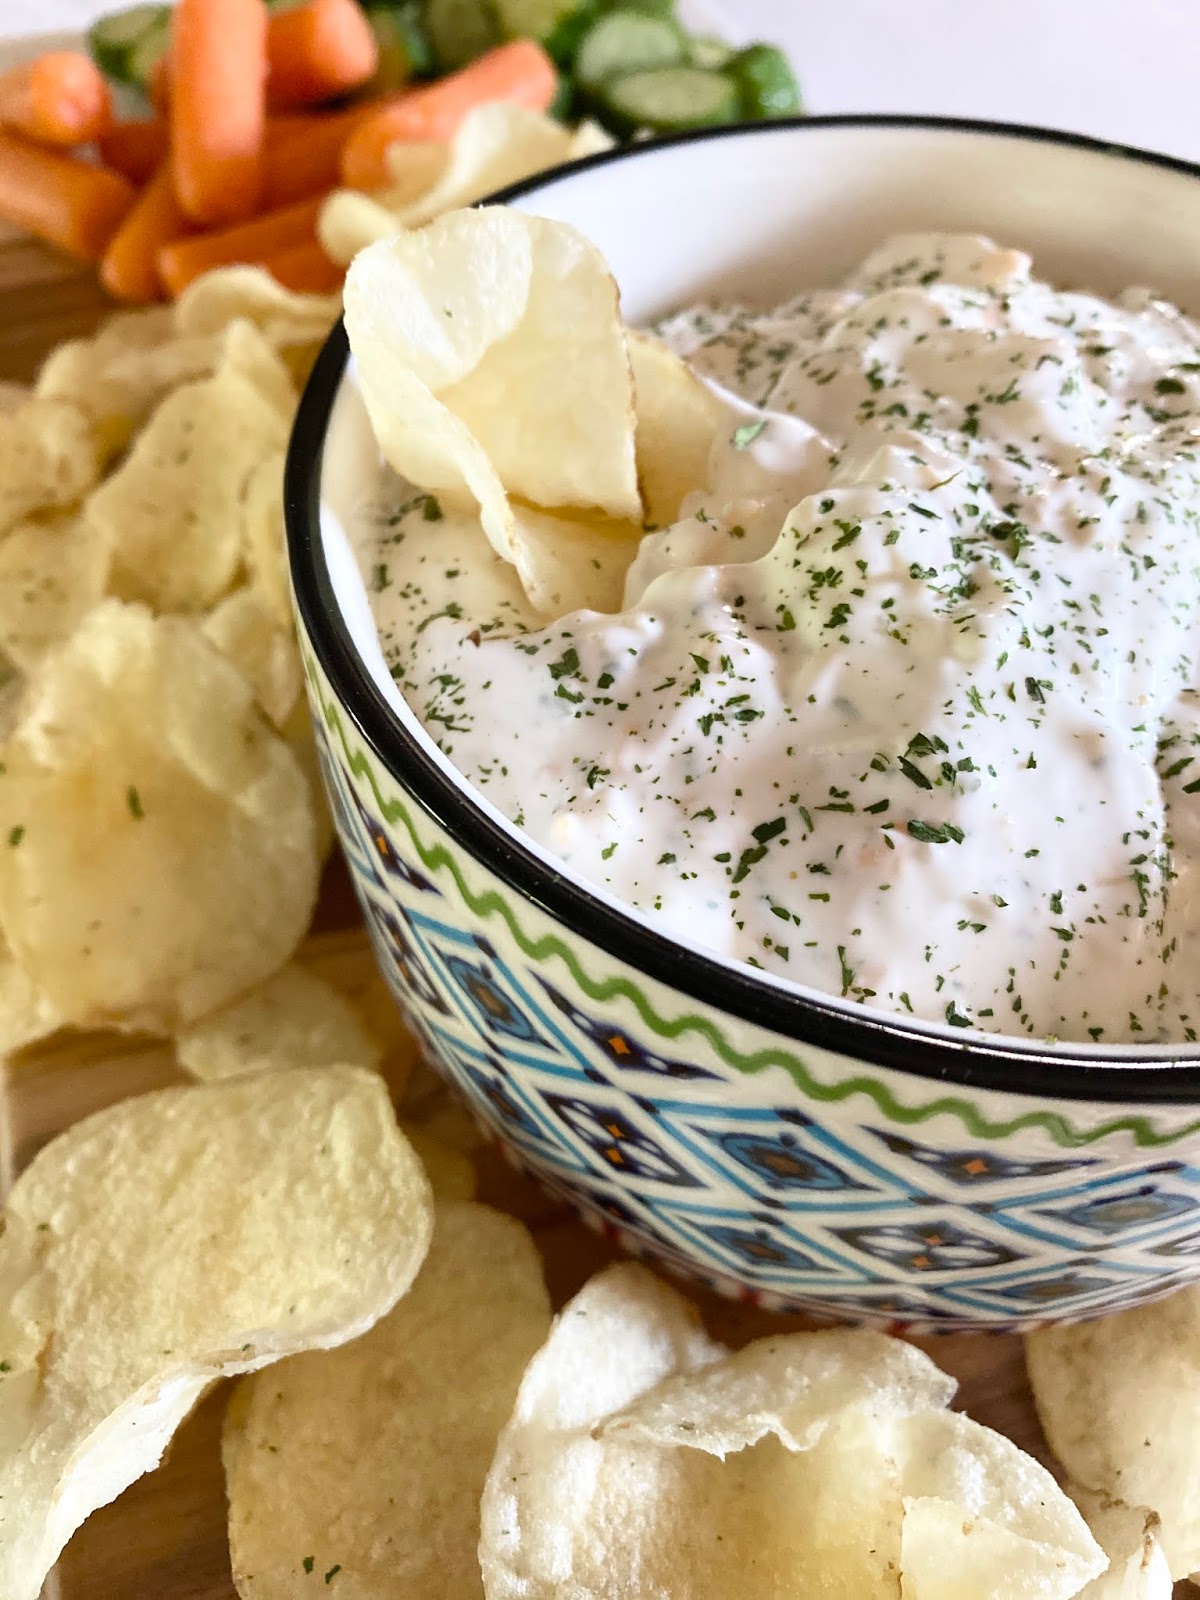 Potato Slayer Dip for Chips & Veggies